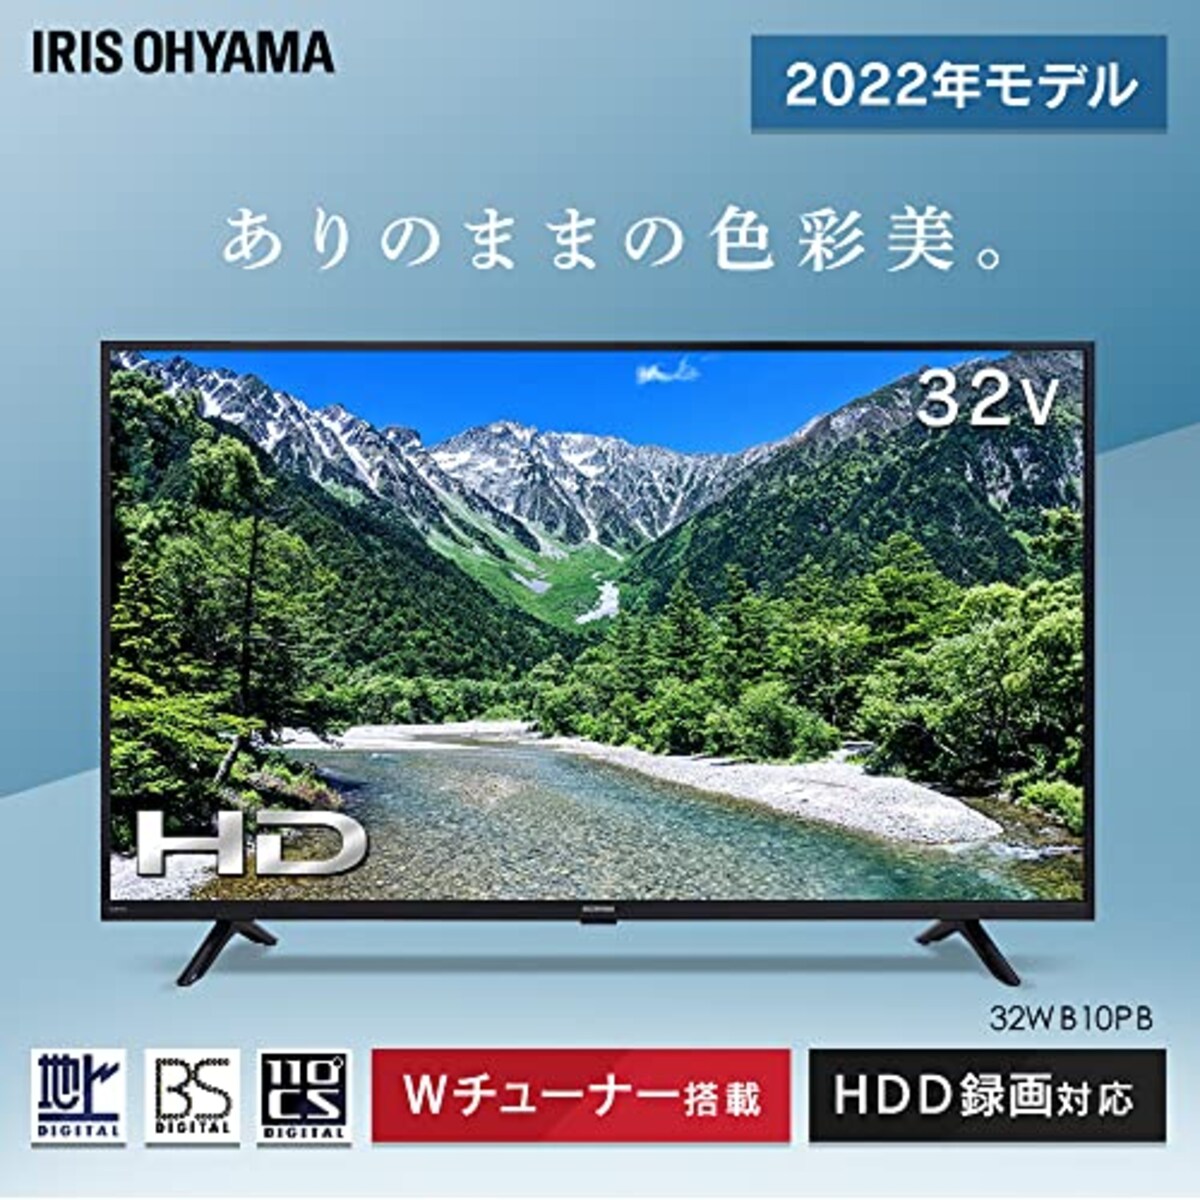  アイリスオーヤマ 32V型 液晶 テレビ 32WB10PB 2022年モデル Wチューナー 裏番組同時録画 外付けHDD録画対応画像3 